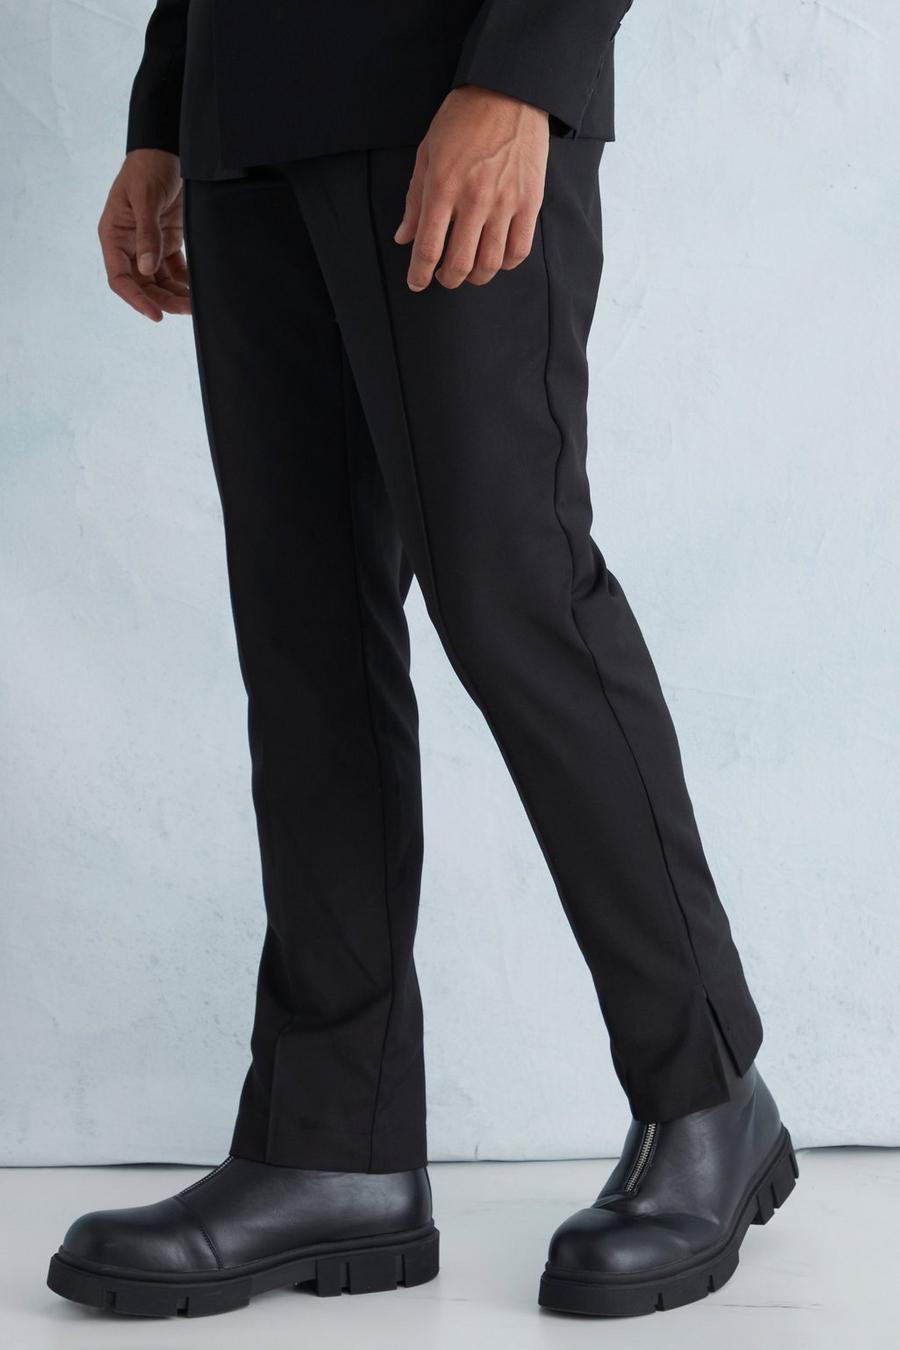 שחור negro מכנסי חליפה בגזרה צרה עם רוכסן במכפלת וכיסים